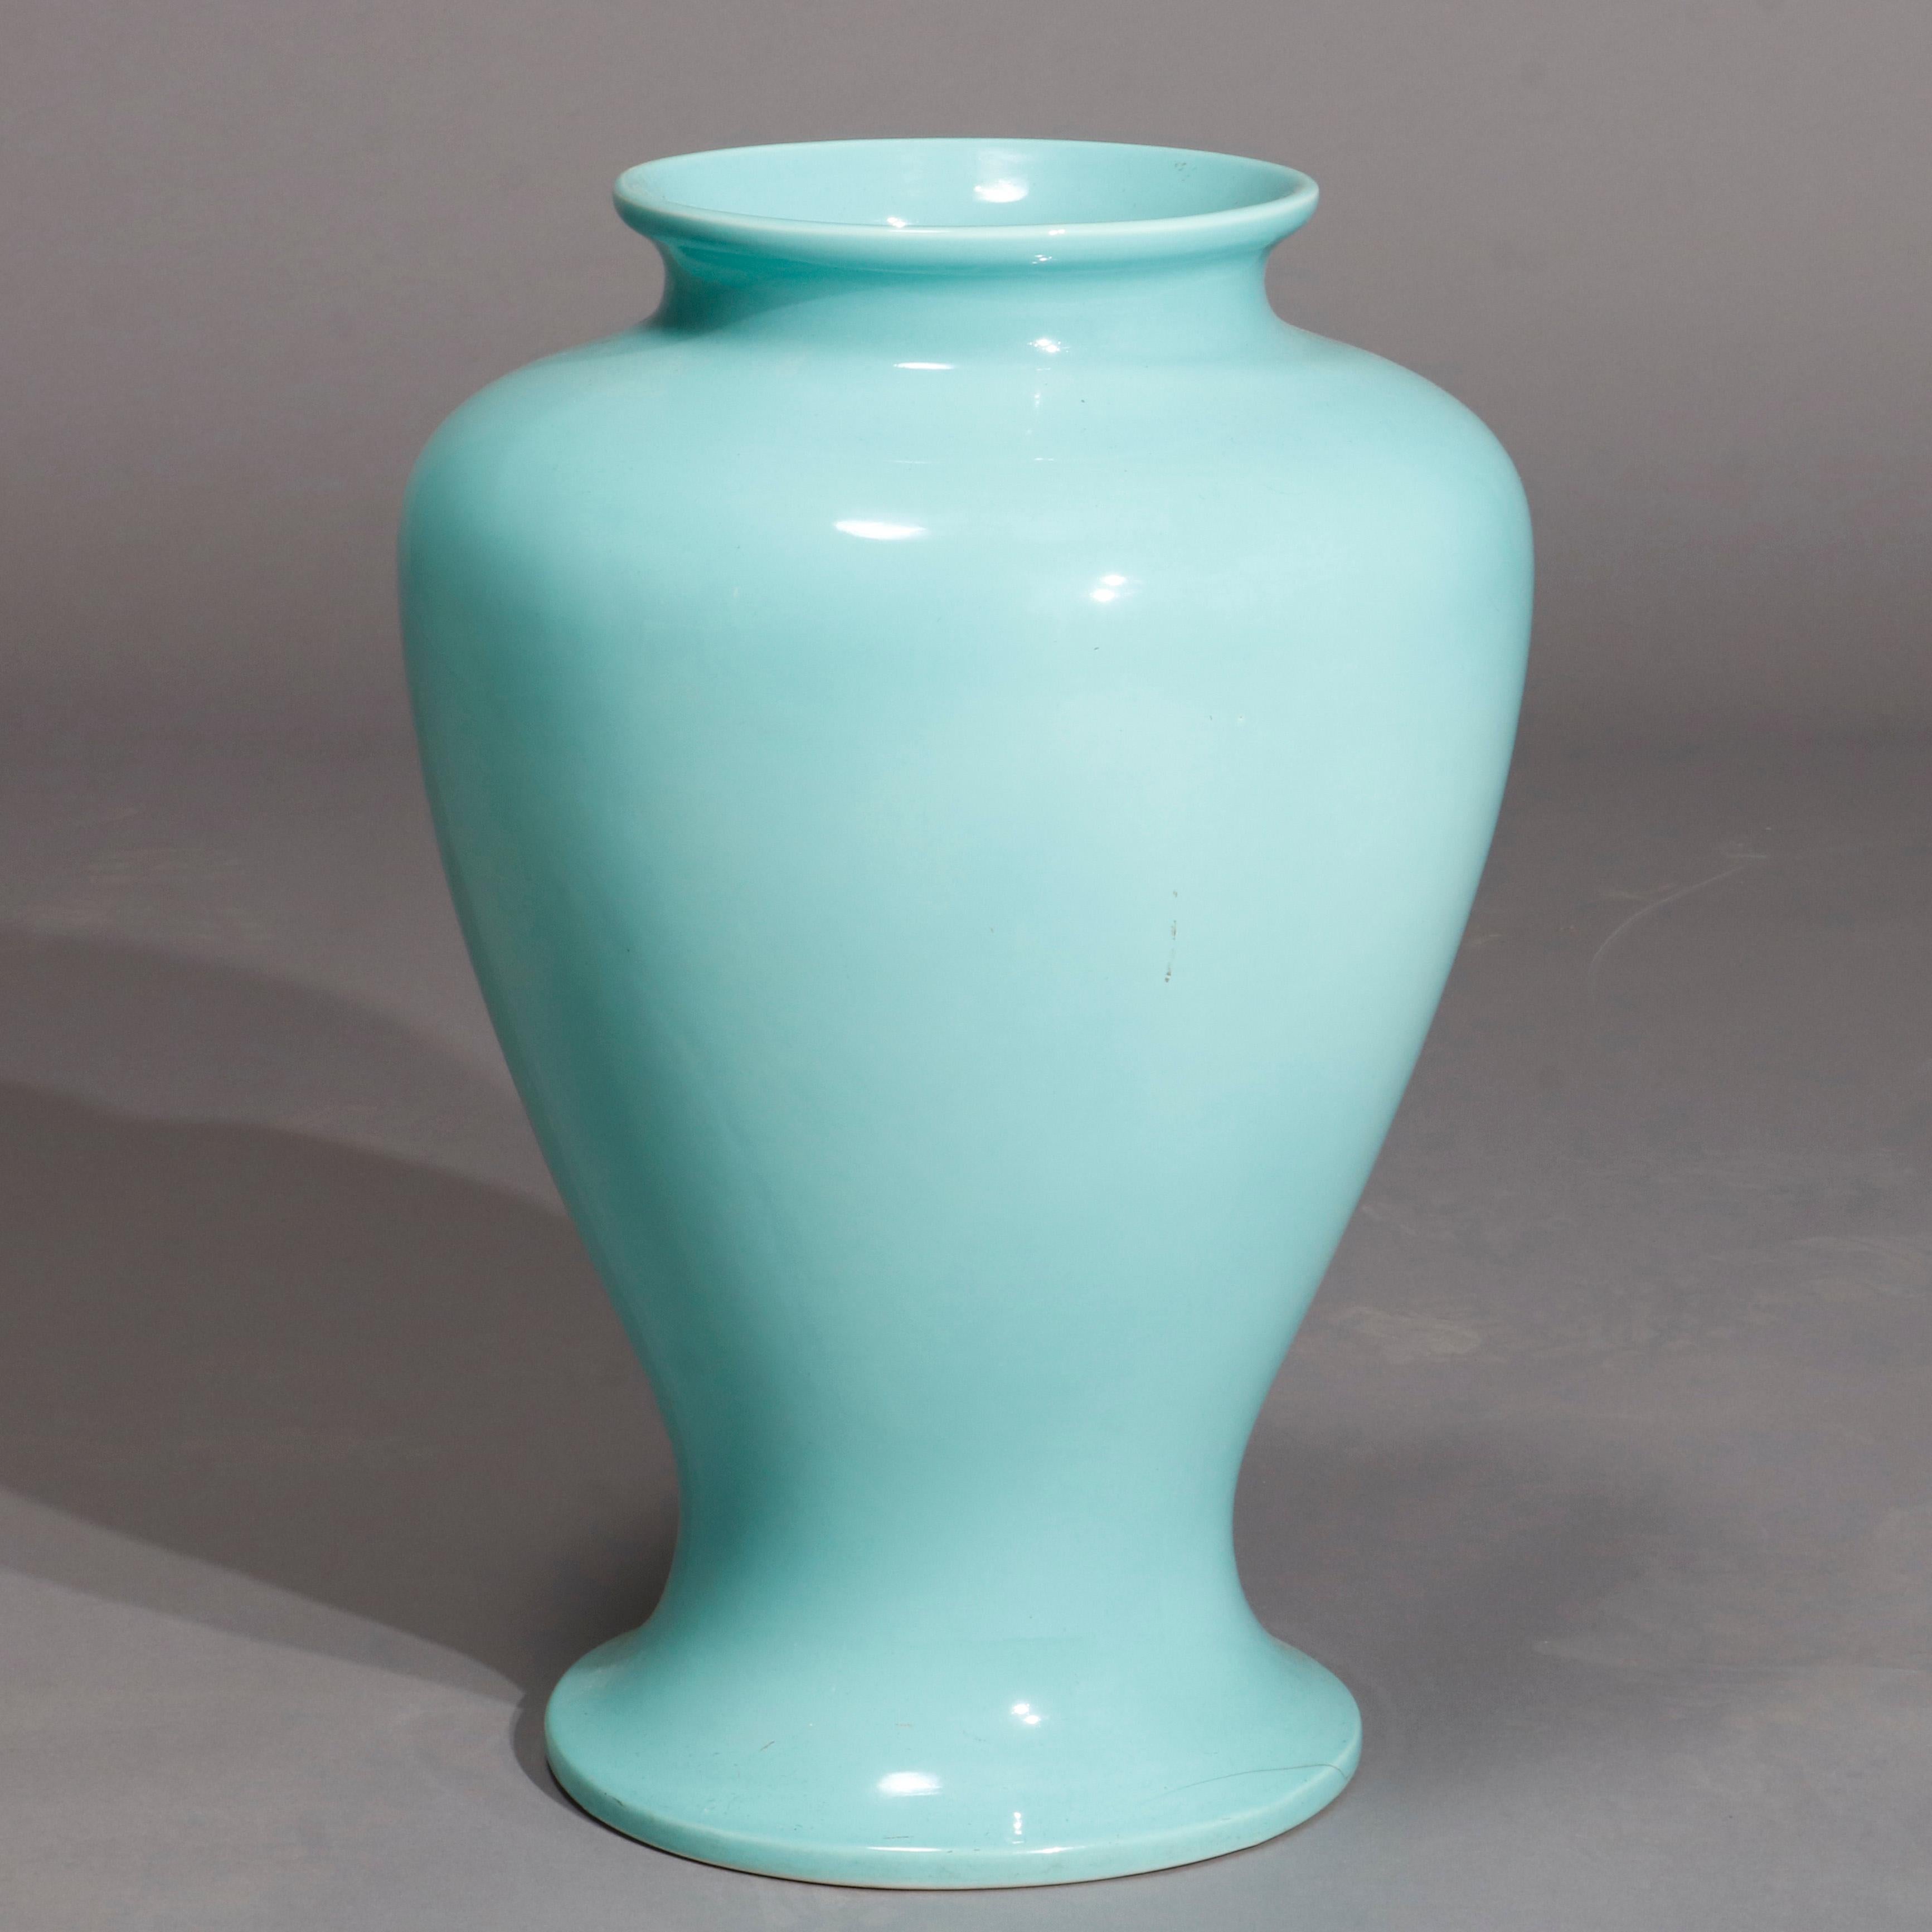 Eine antike Arts & Crafts Trenton Ware Kunst Keramik Bodenvase bietet blau glasiert Urne Form Gefäß mit Hersteller Stempel auf dem Boden, wie fotografiert, 20

Maße: 23